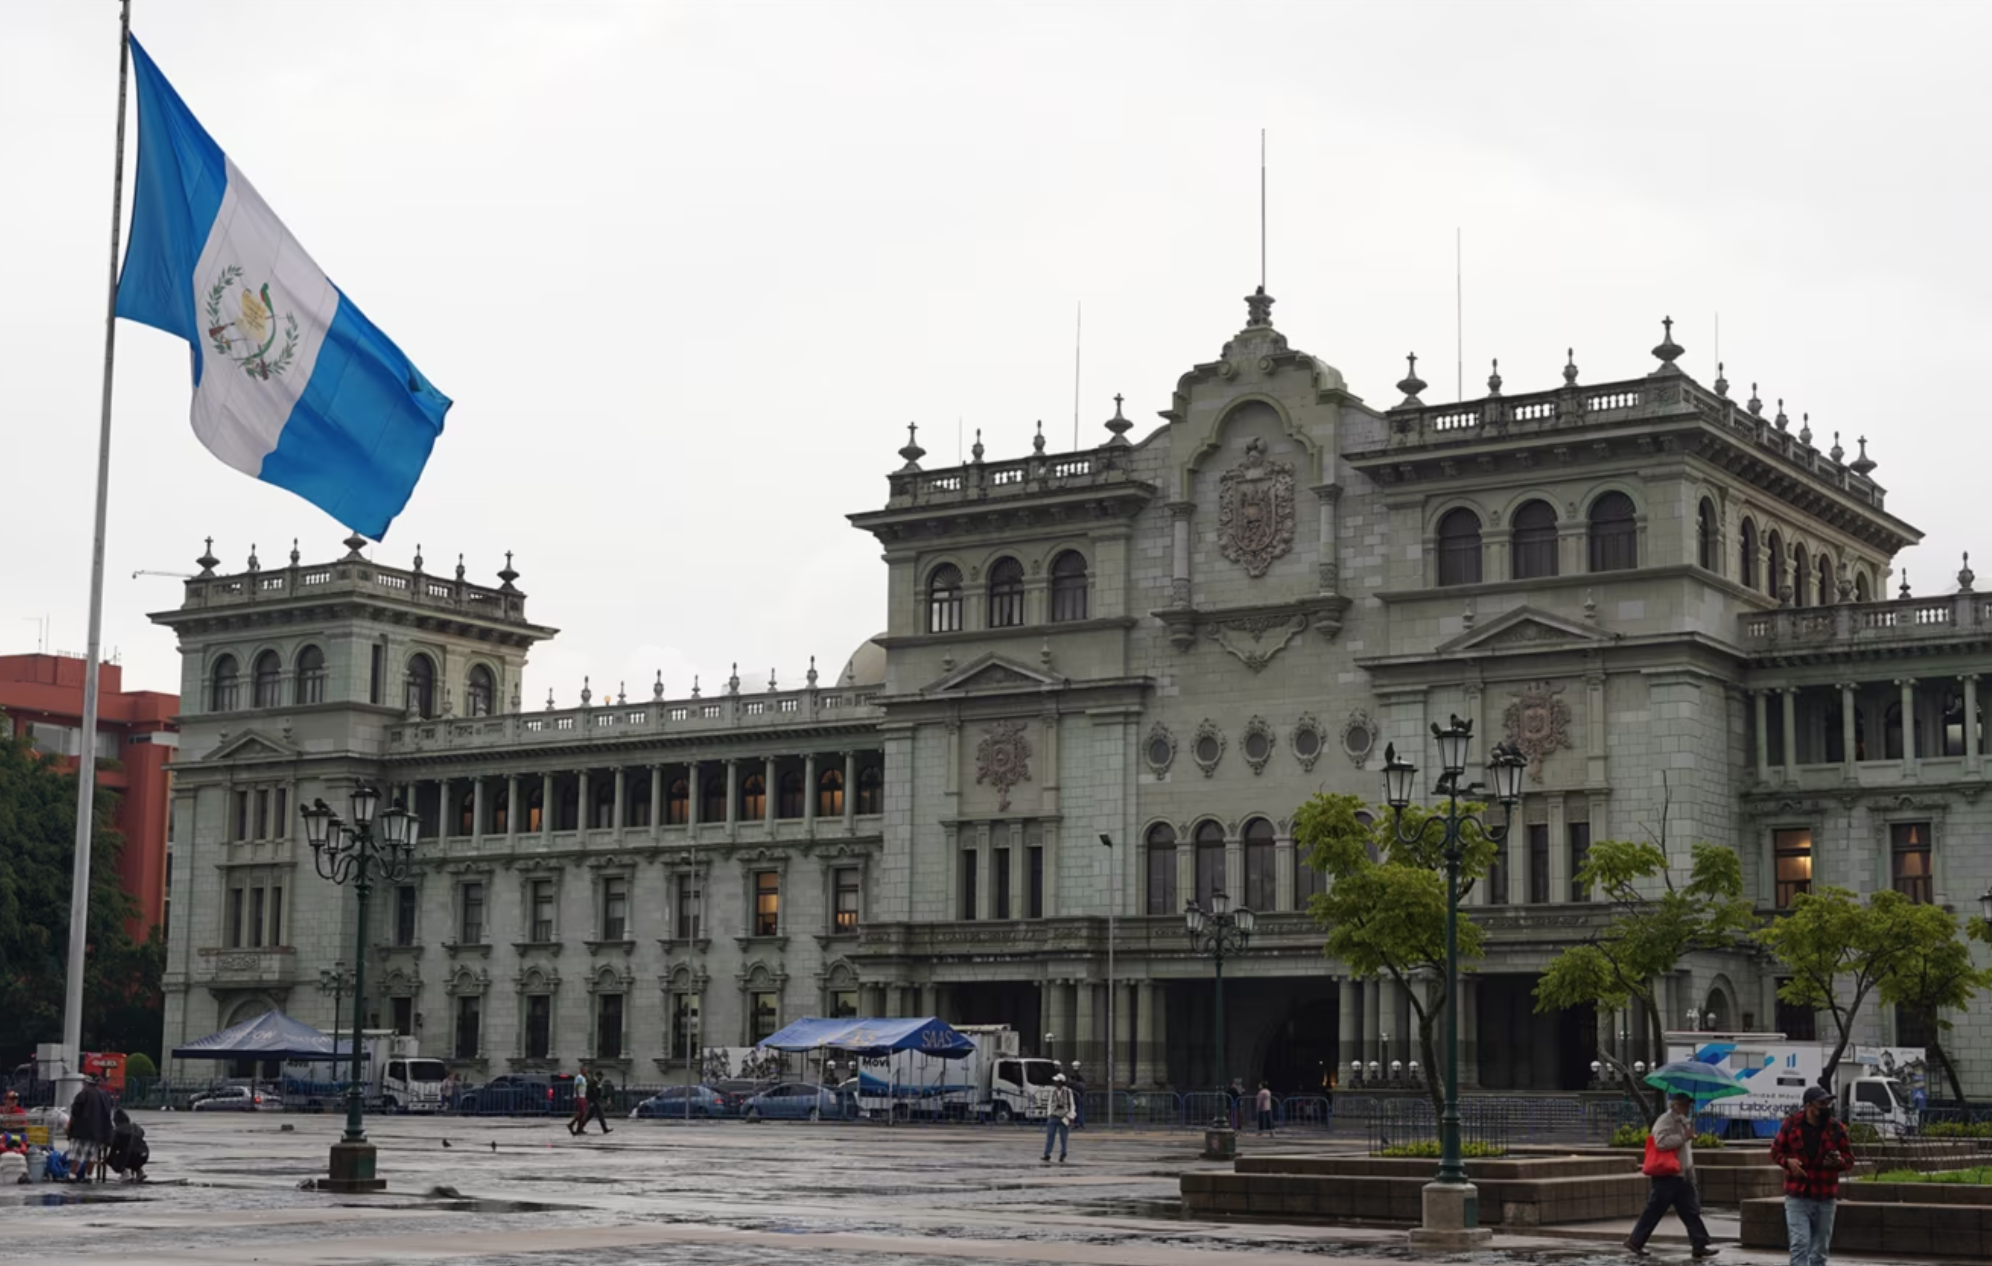 Estados Unidos sanciona a exdirector del Centro de Gobierno de Guatemala por corrupción